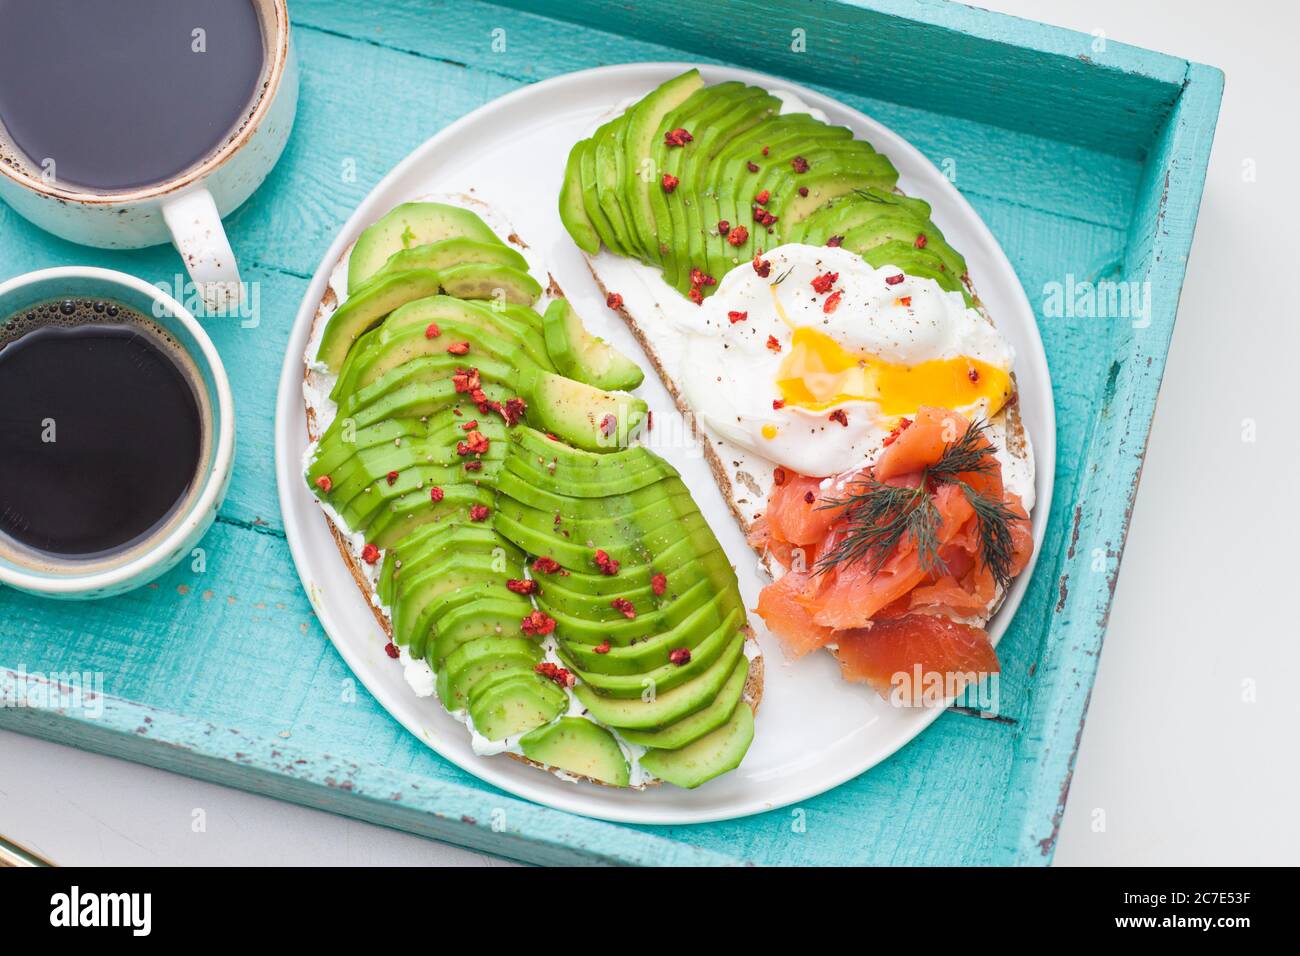 Bruschetta au saumon salé, avocat haché, poivre et œuf poché sur une assiette blanche sur fond de turqoise Banque D'Images